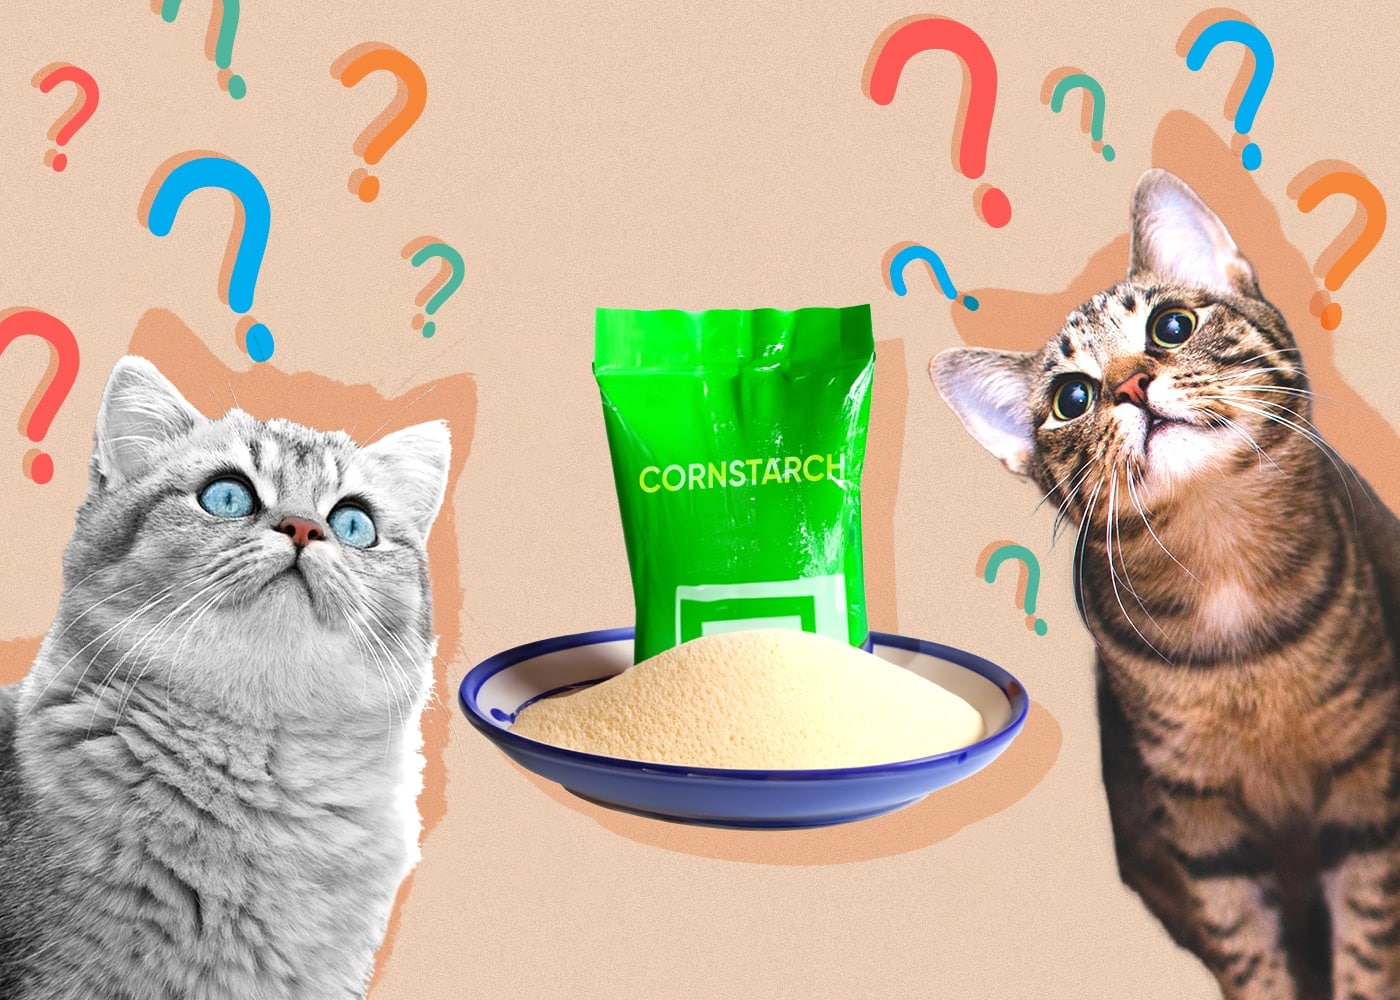 Can Cats Eat Cornstarch